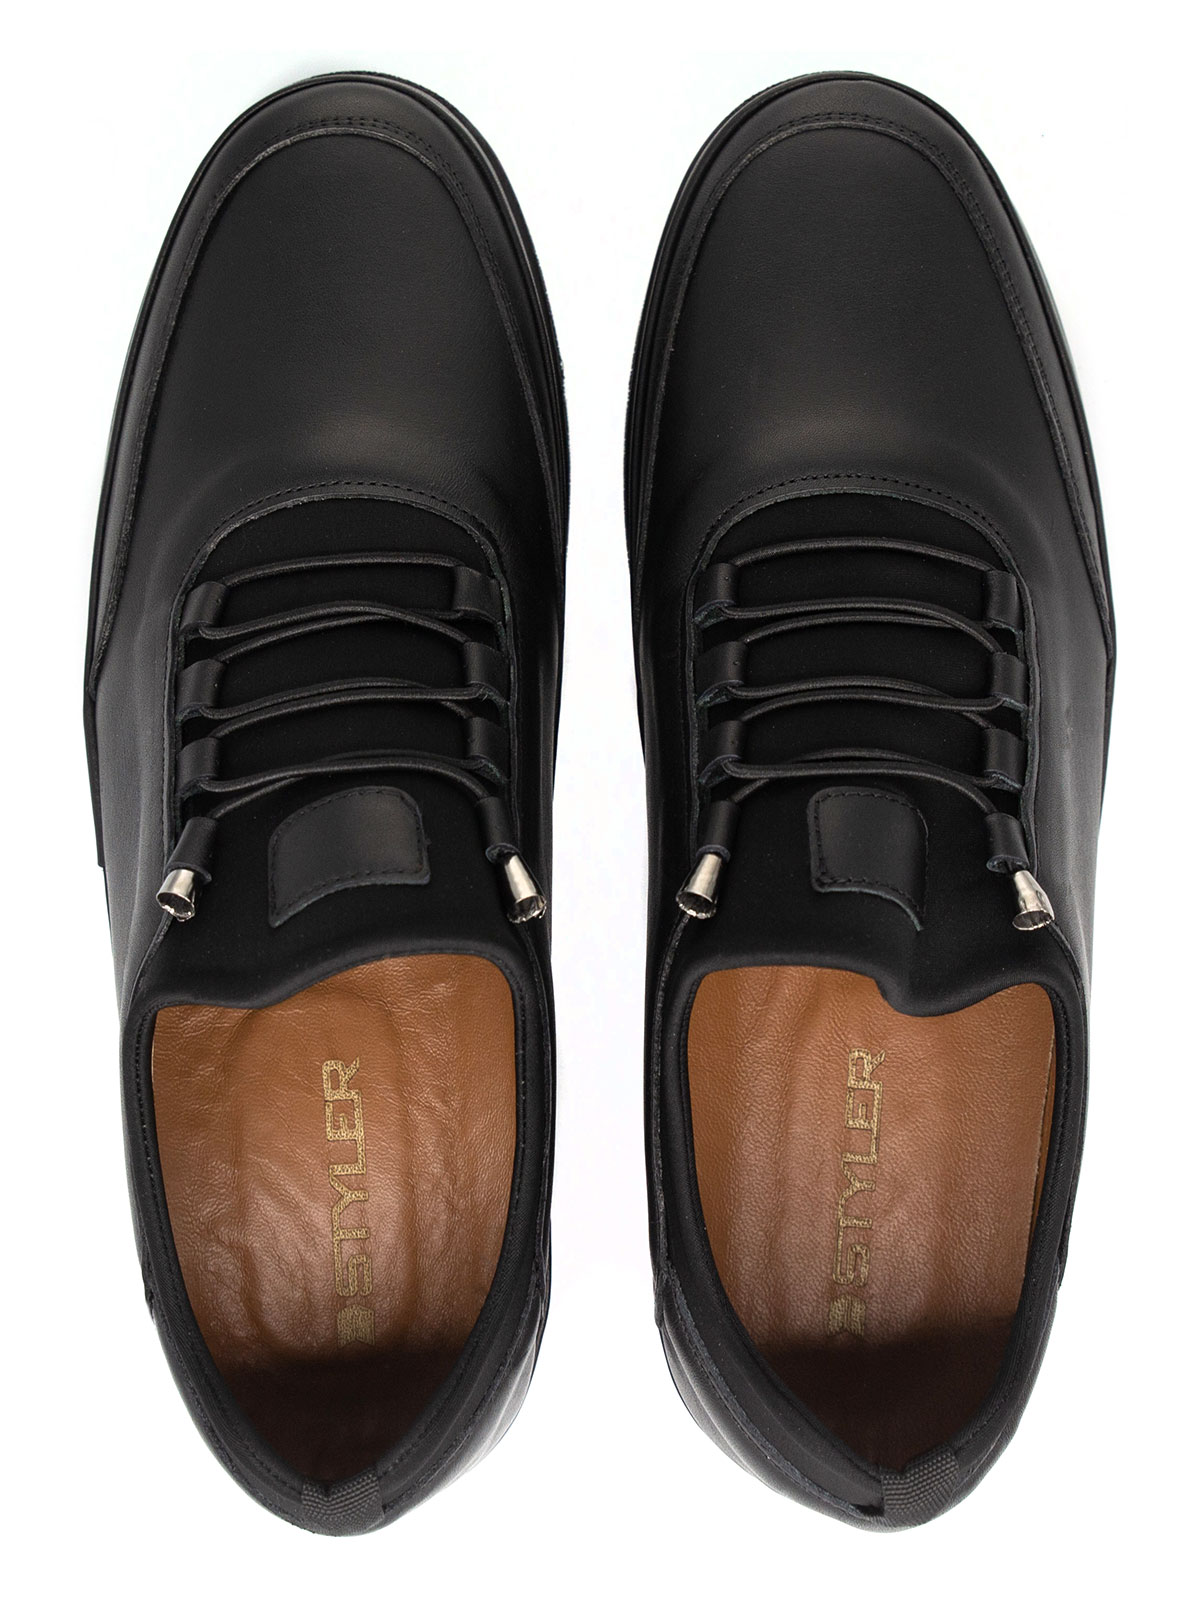 Μαύρα δερμάτινα παπούτσια με ελαστικά κο - 81095 - € 41.62 img2